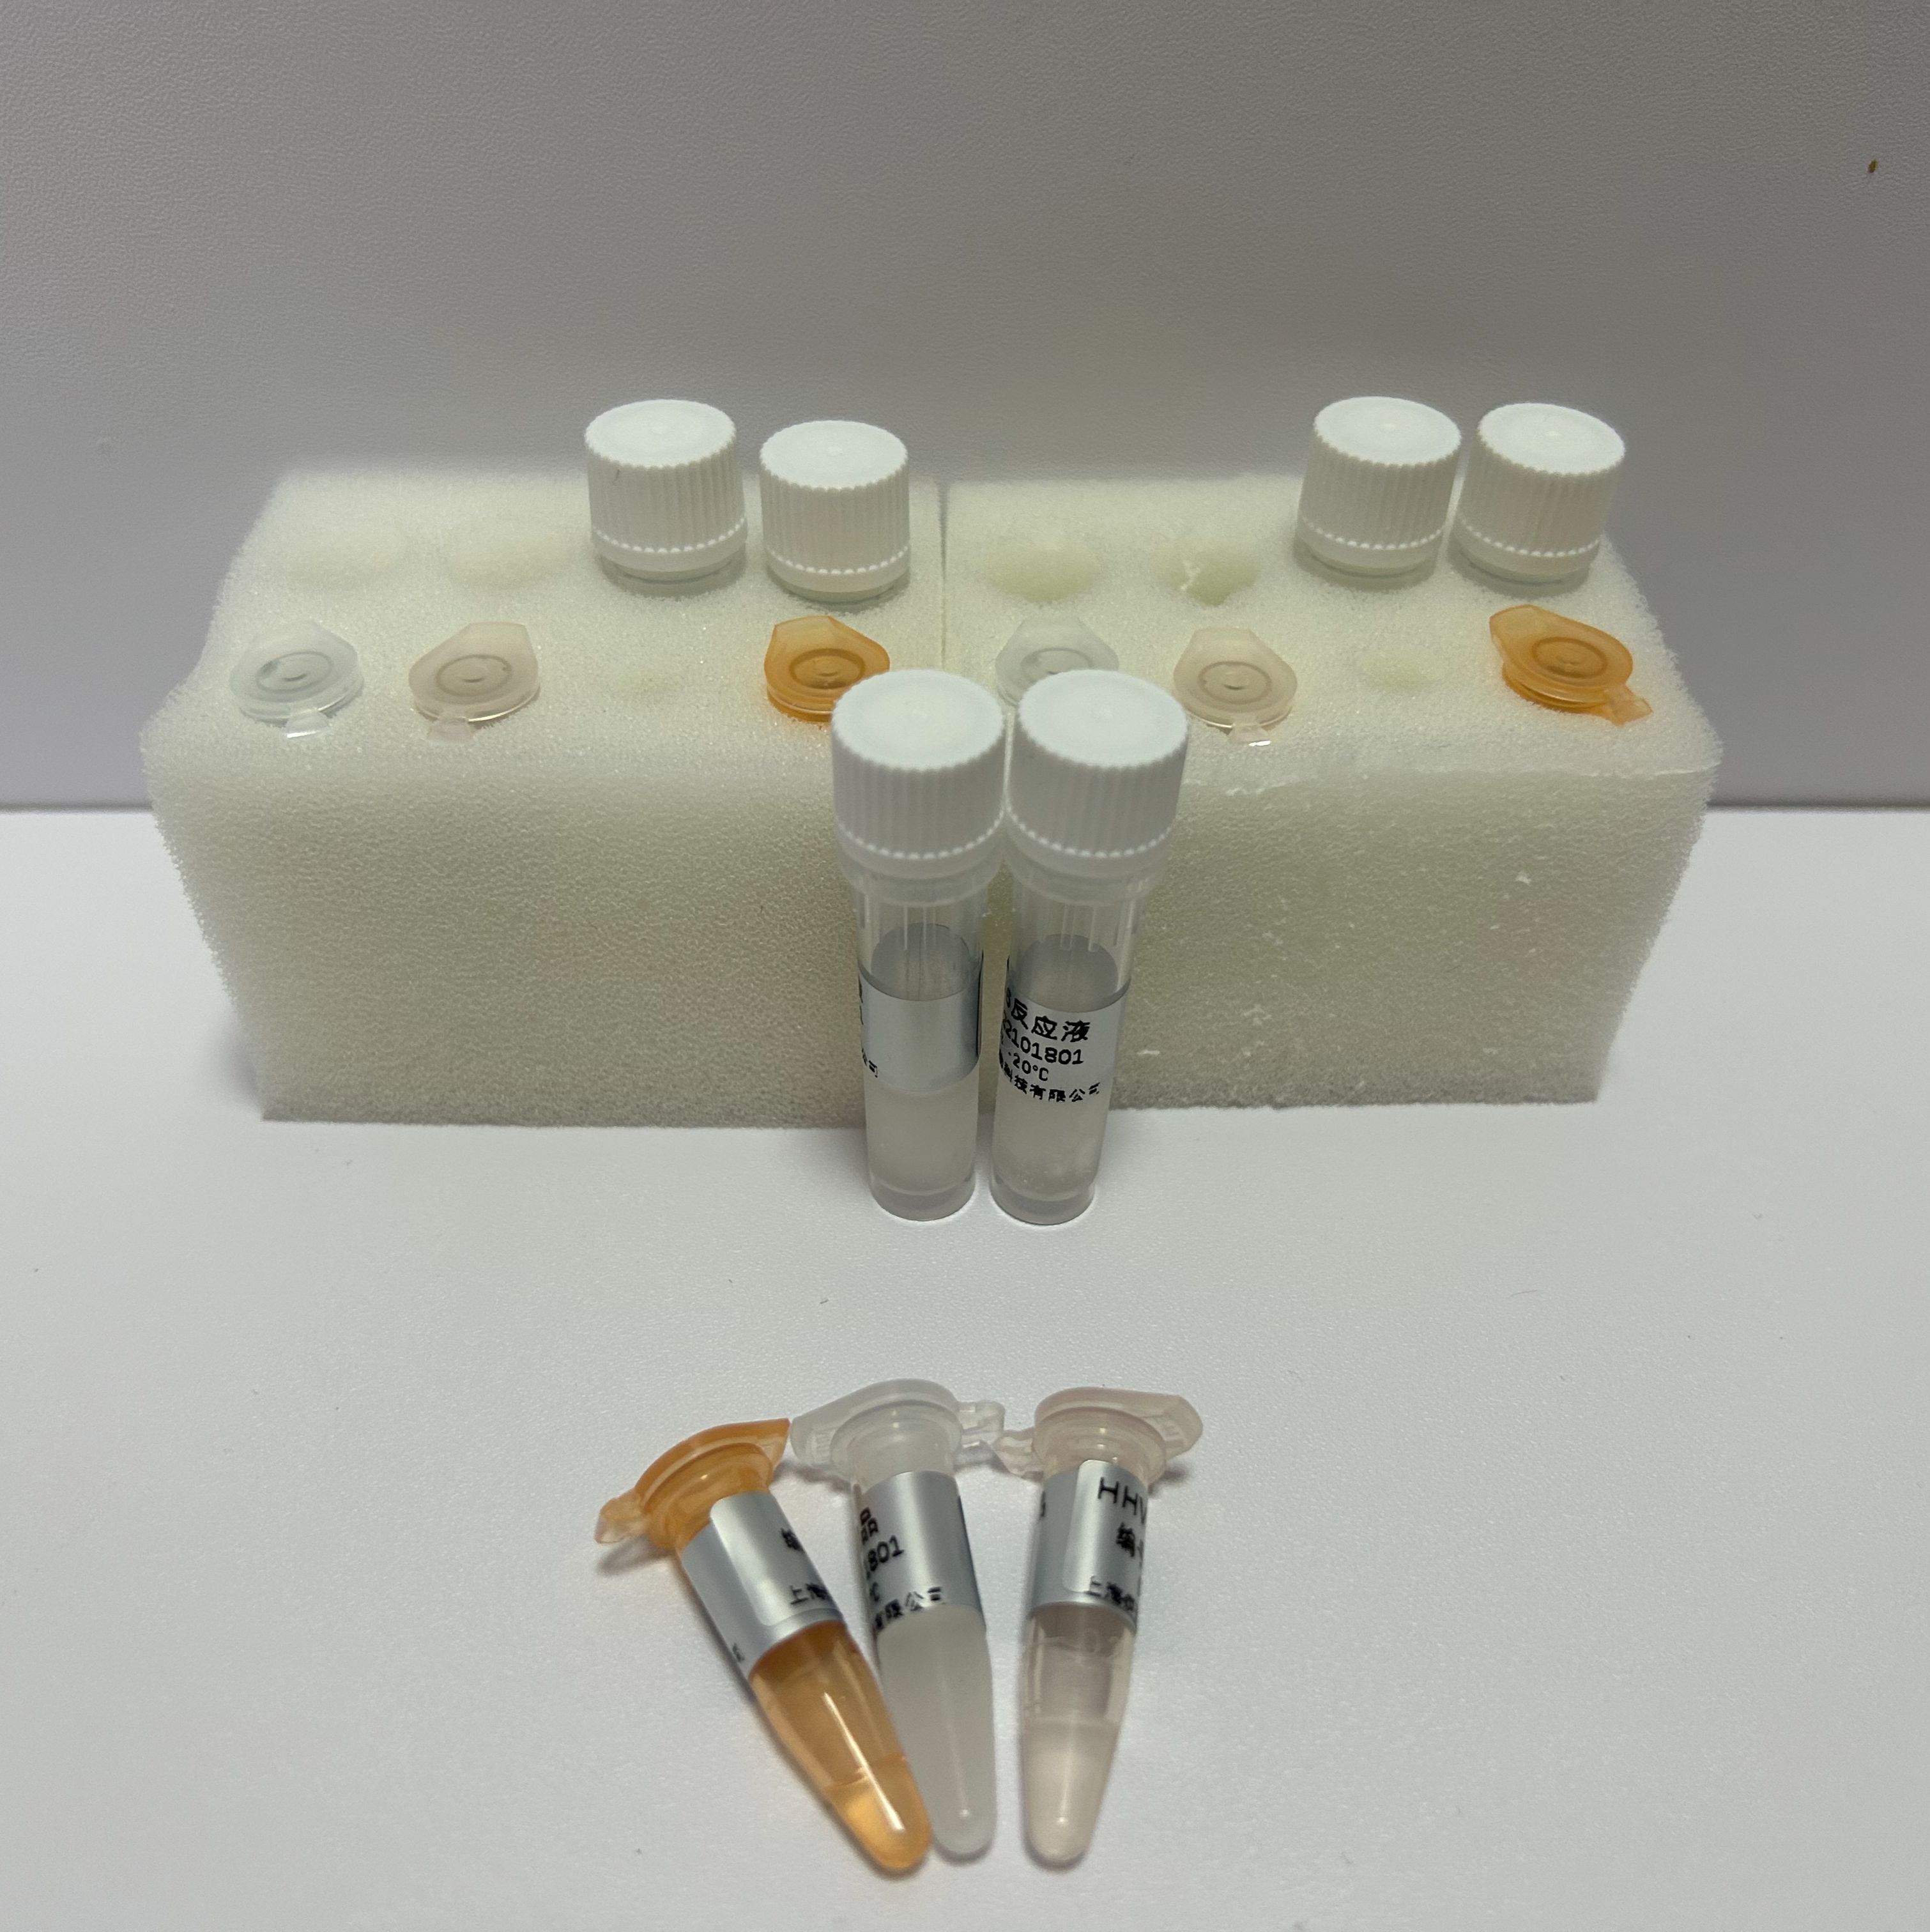 禽阿尔法疱疹病毒2型PCR试剂盒